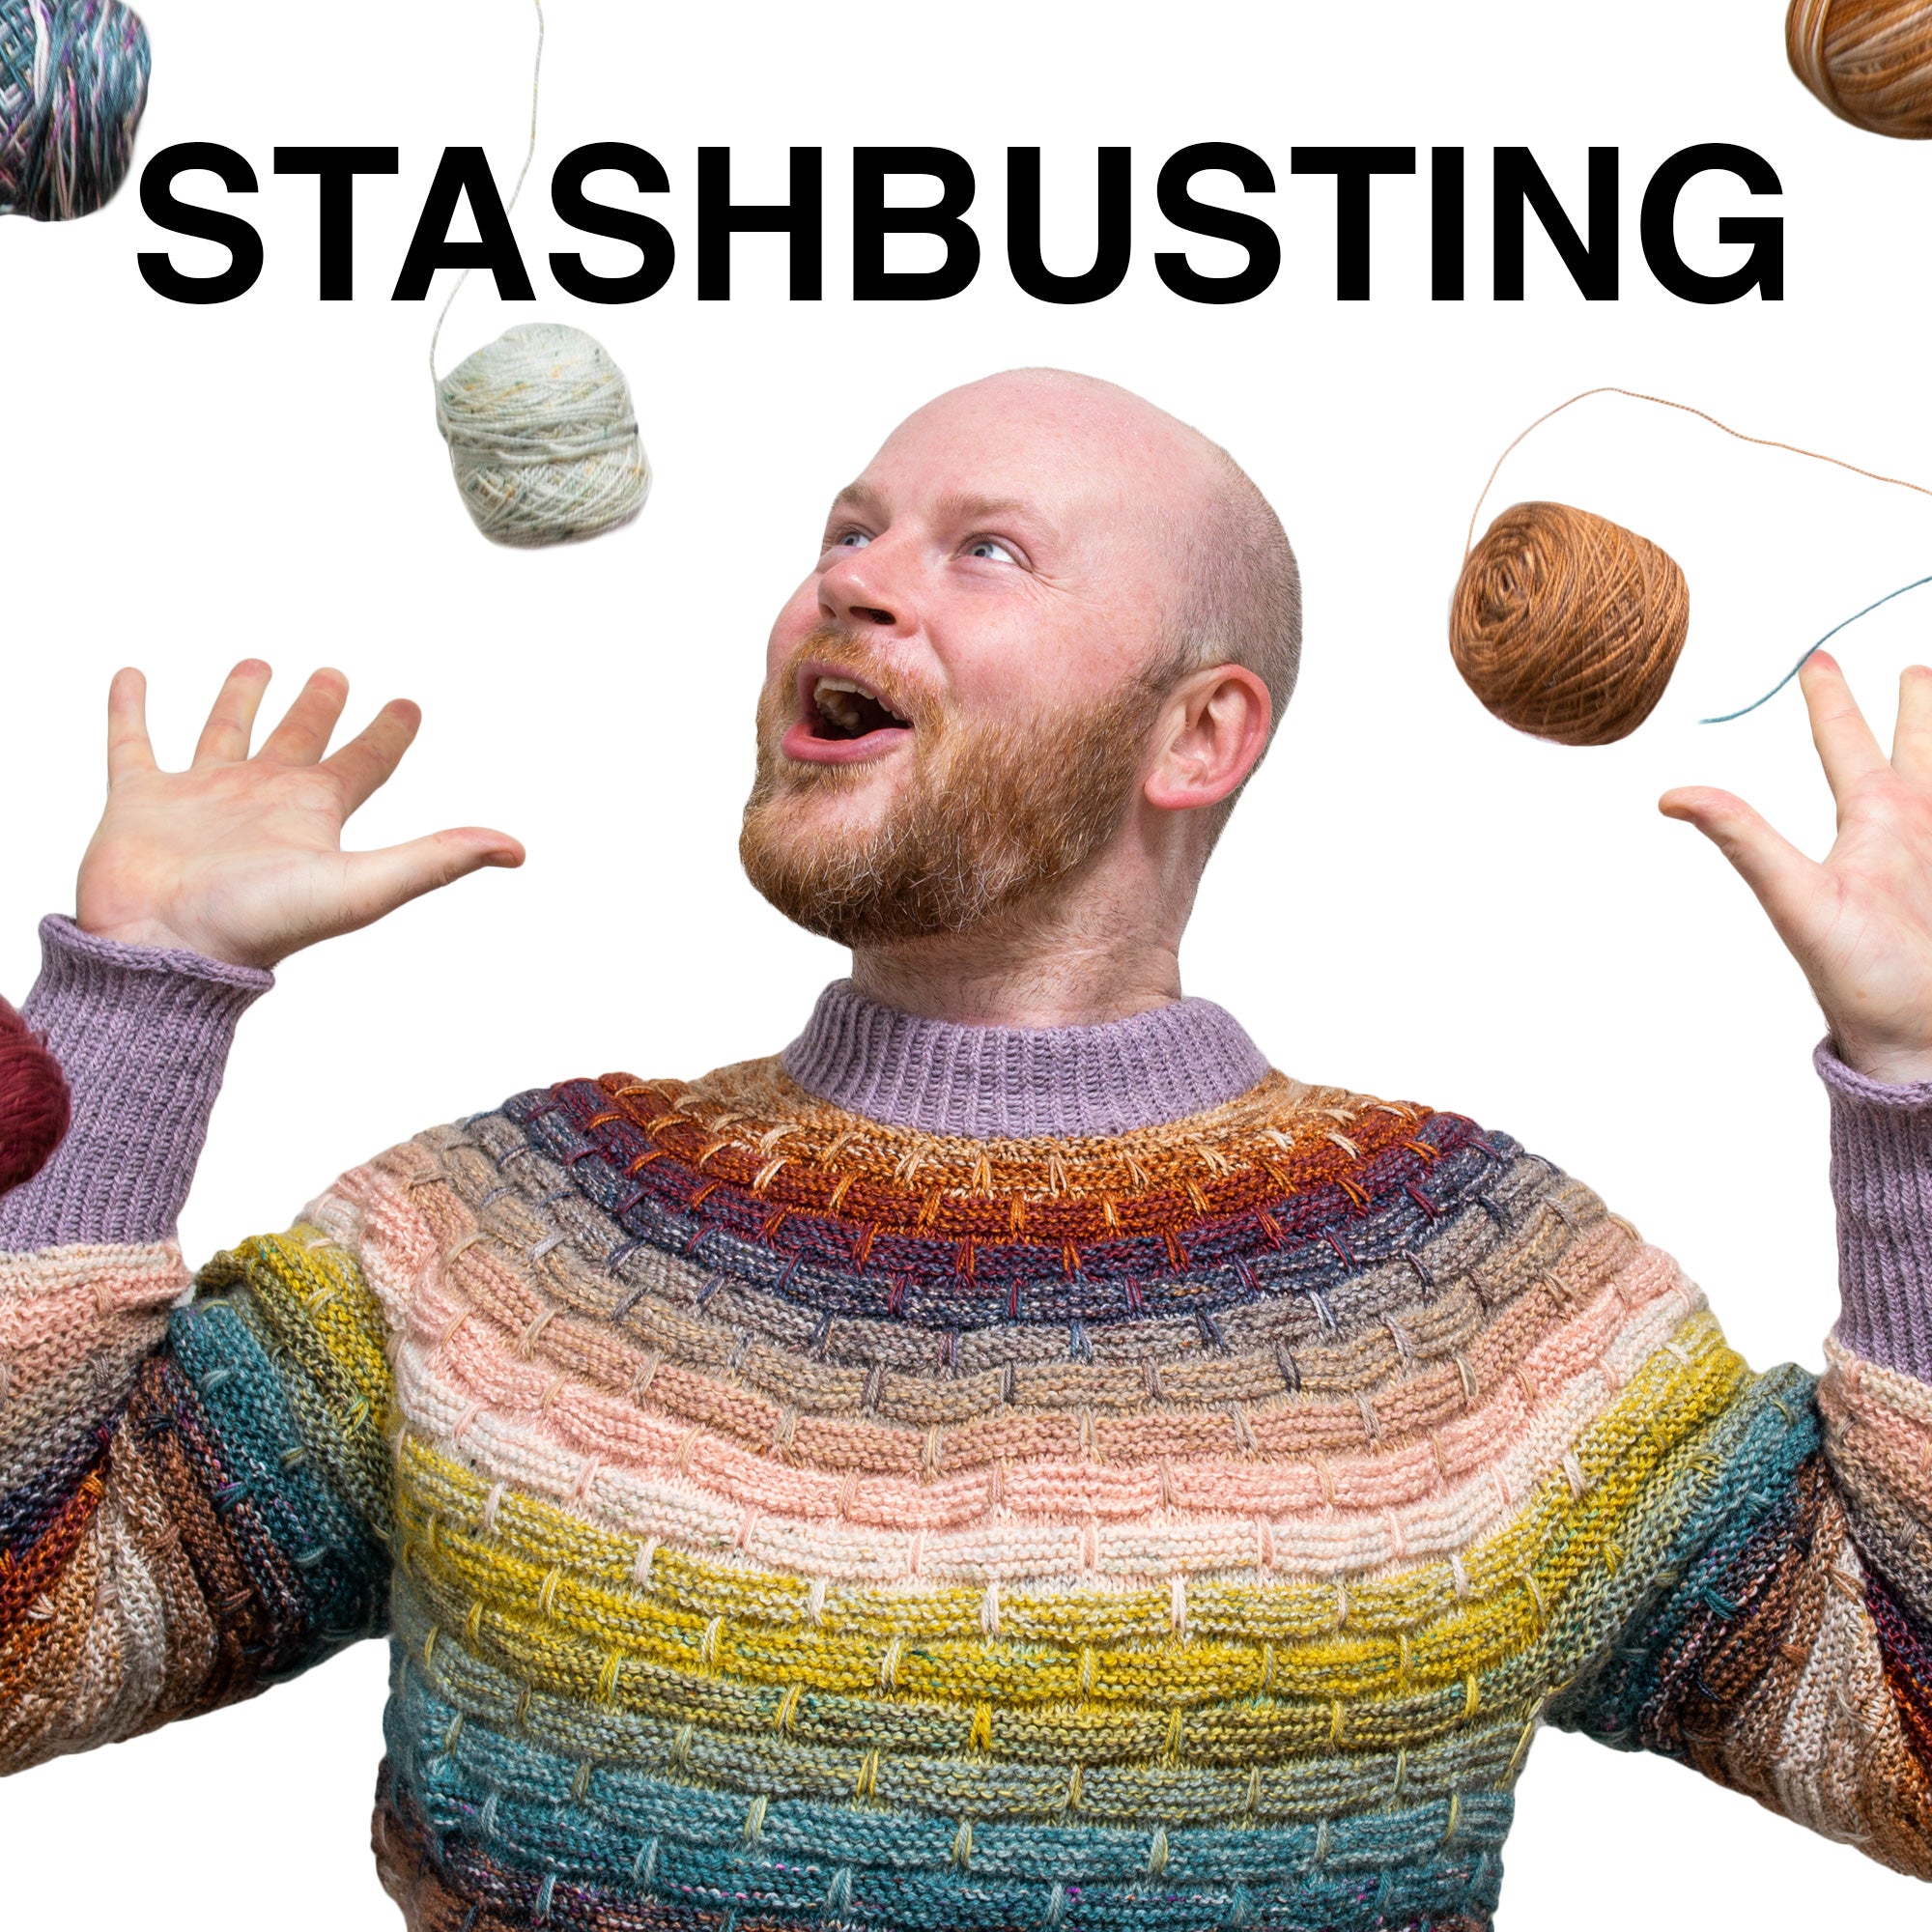 Stashbusting